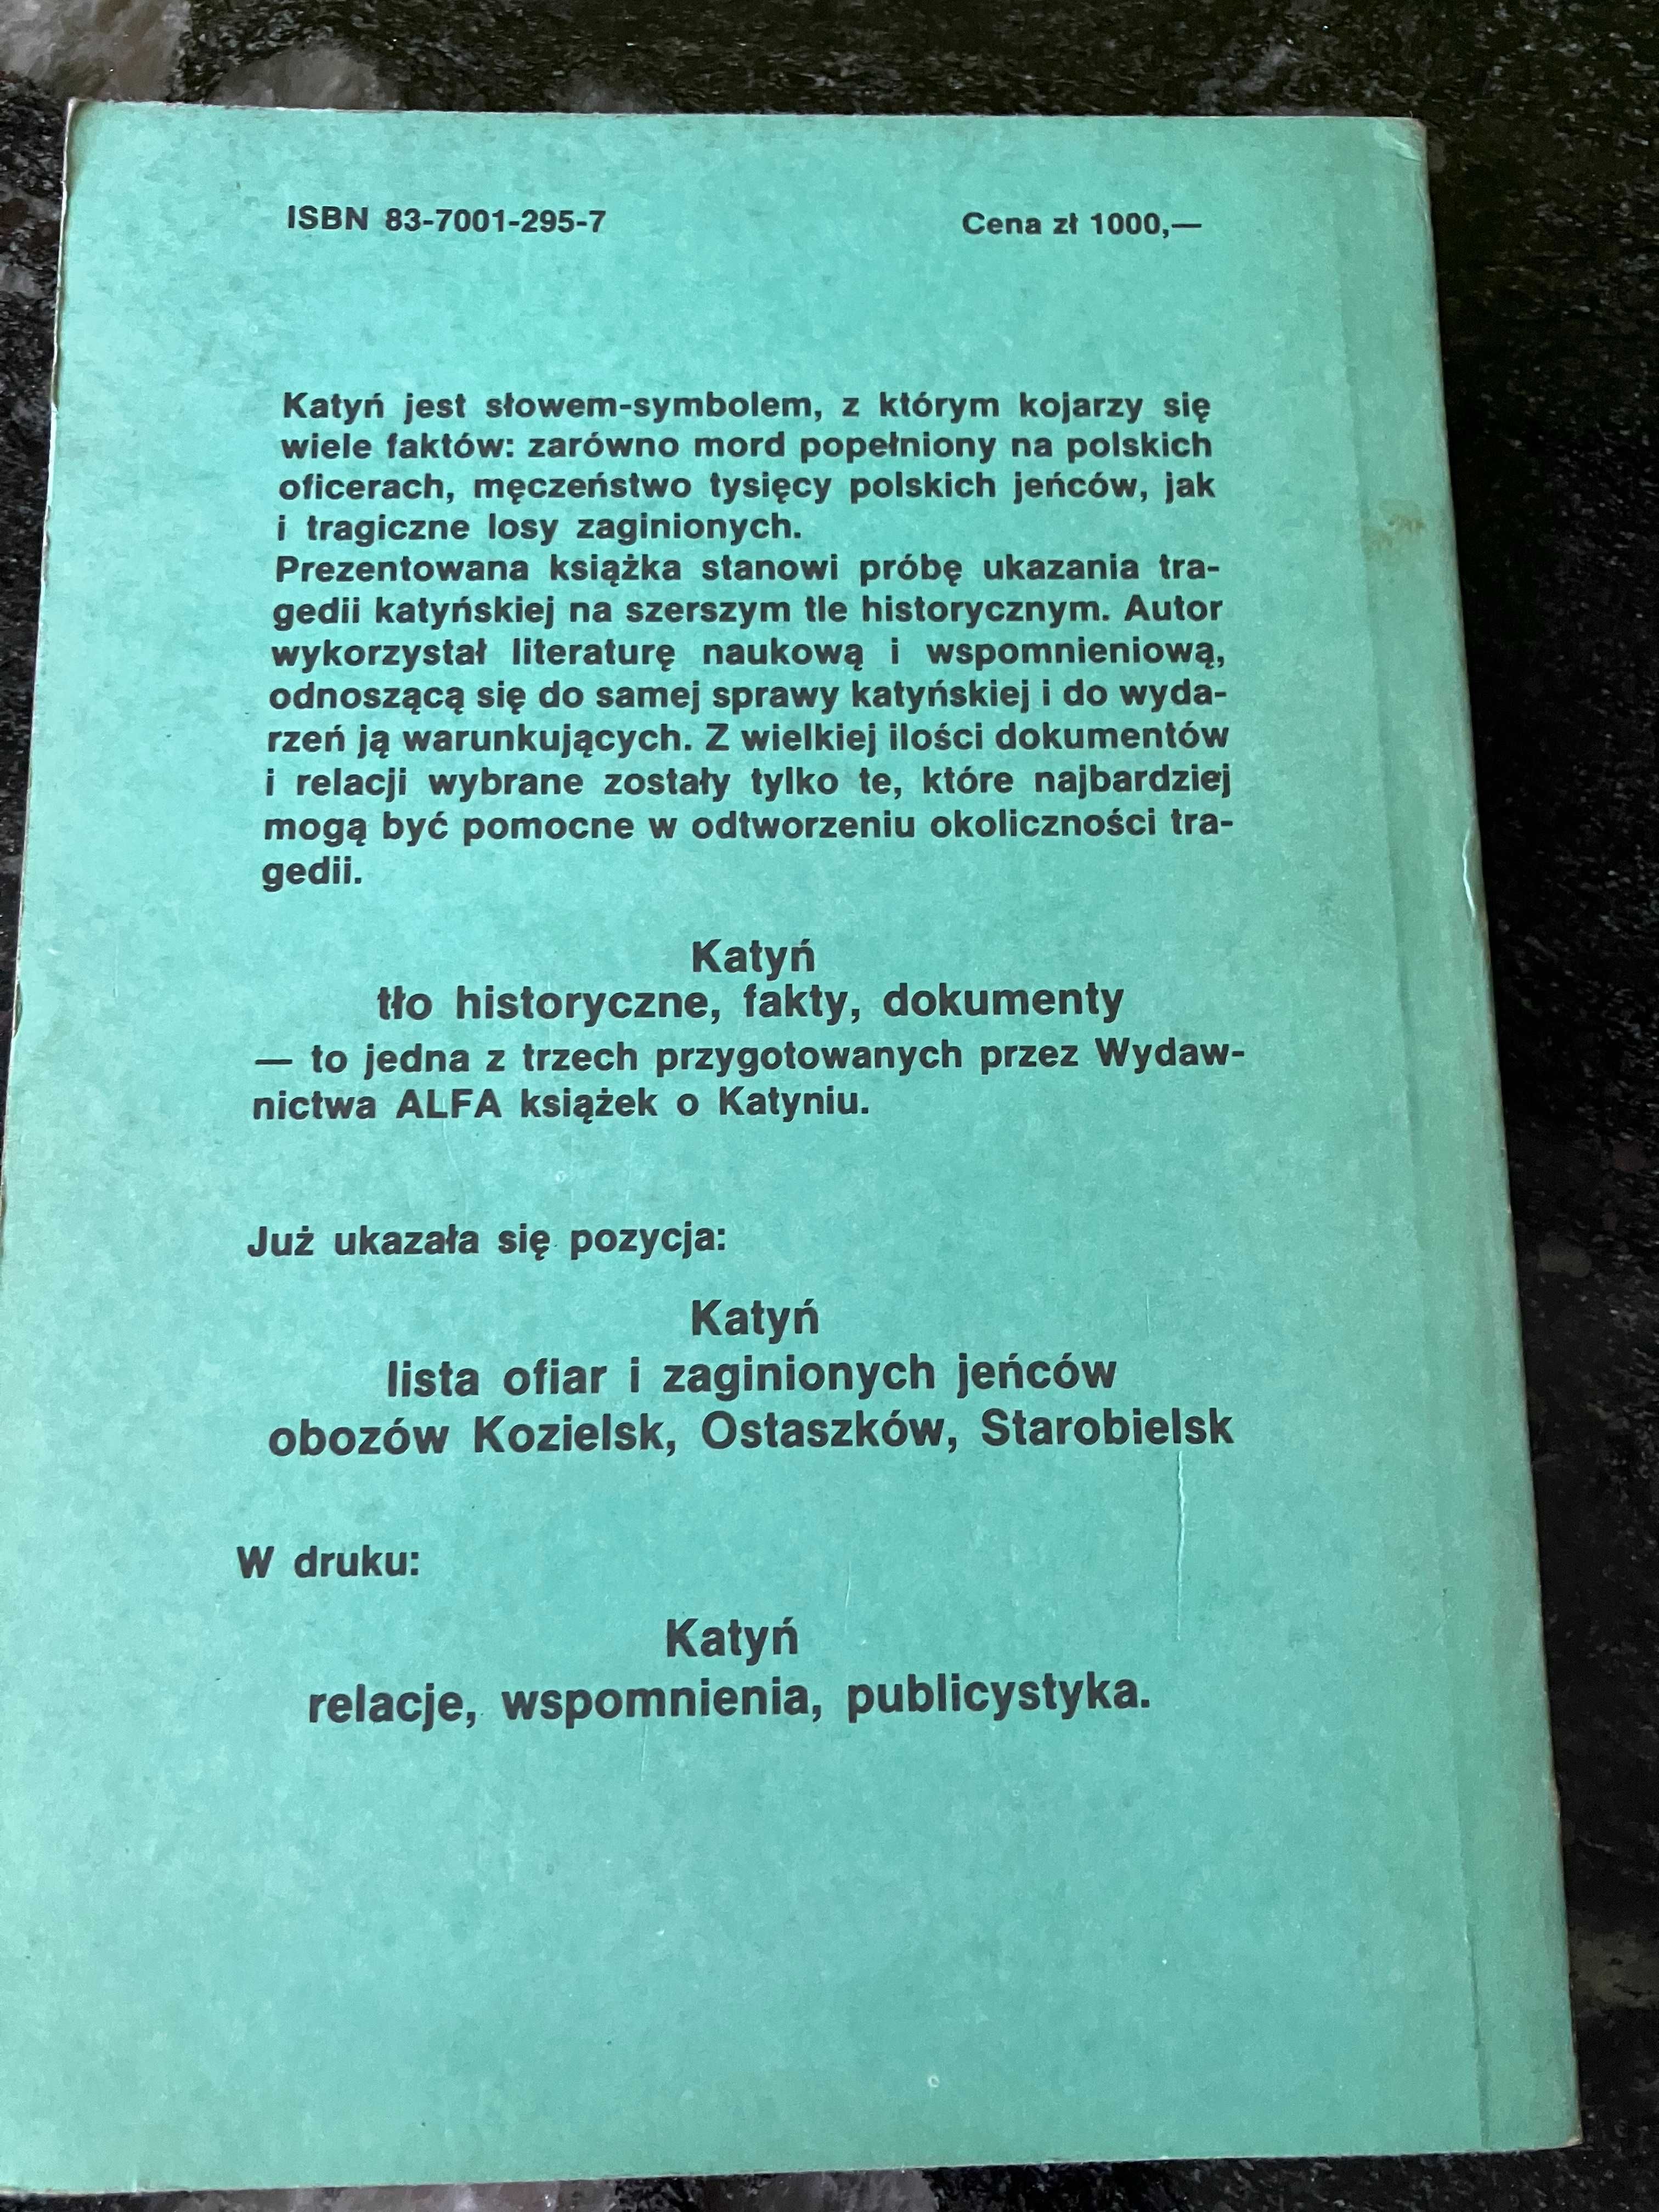 Katyń-tło historyczne, fakty, dokumenty-Szcześniak 1989